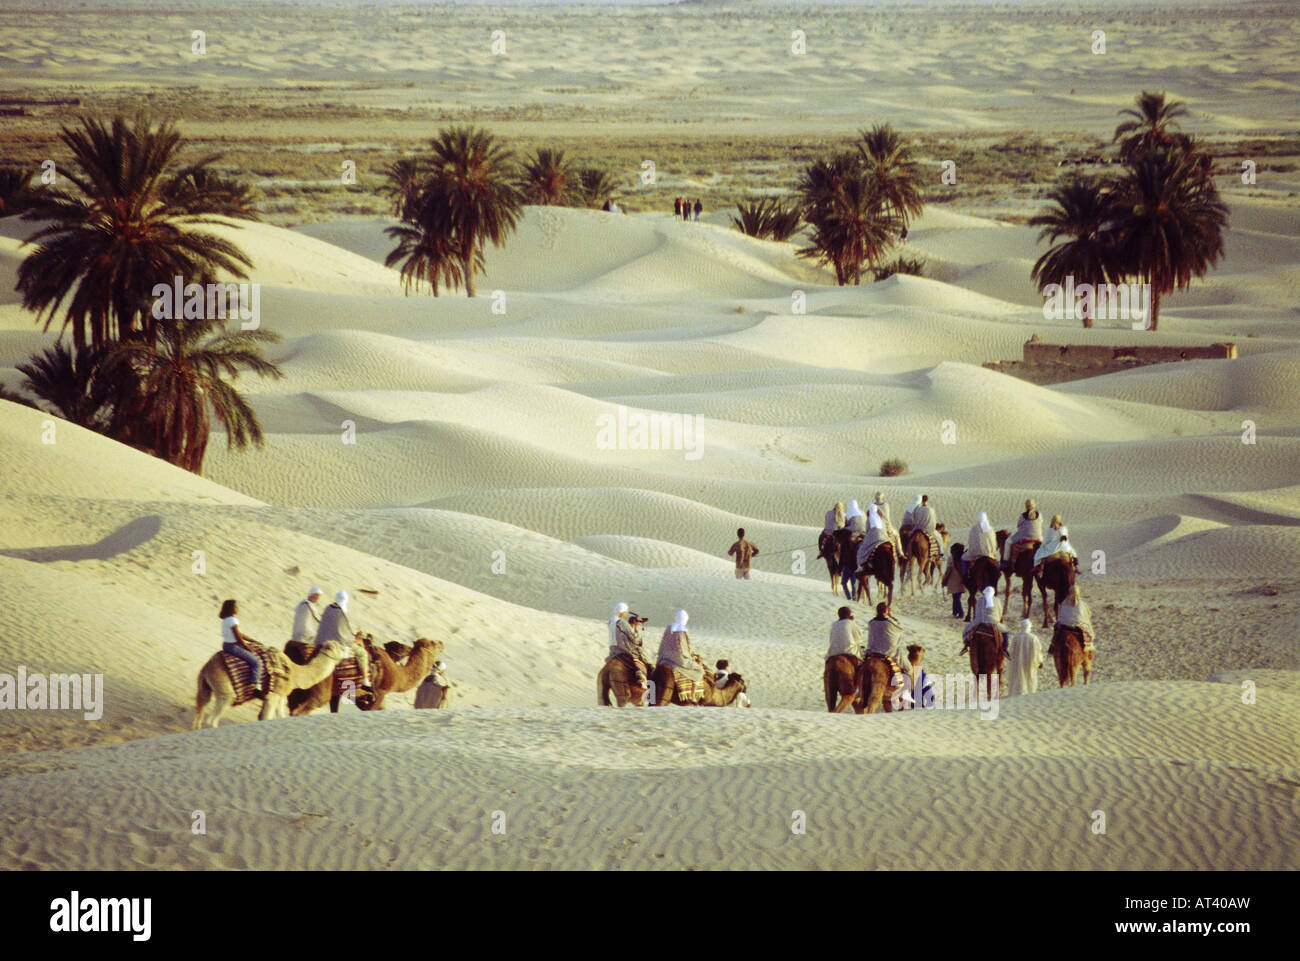 geography / travel, Tunisia, Douz, sand dunes, palms, palm ,landscape, landscapes, camel, caravan Stock Photo